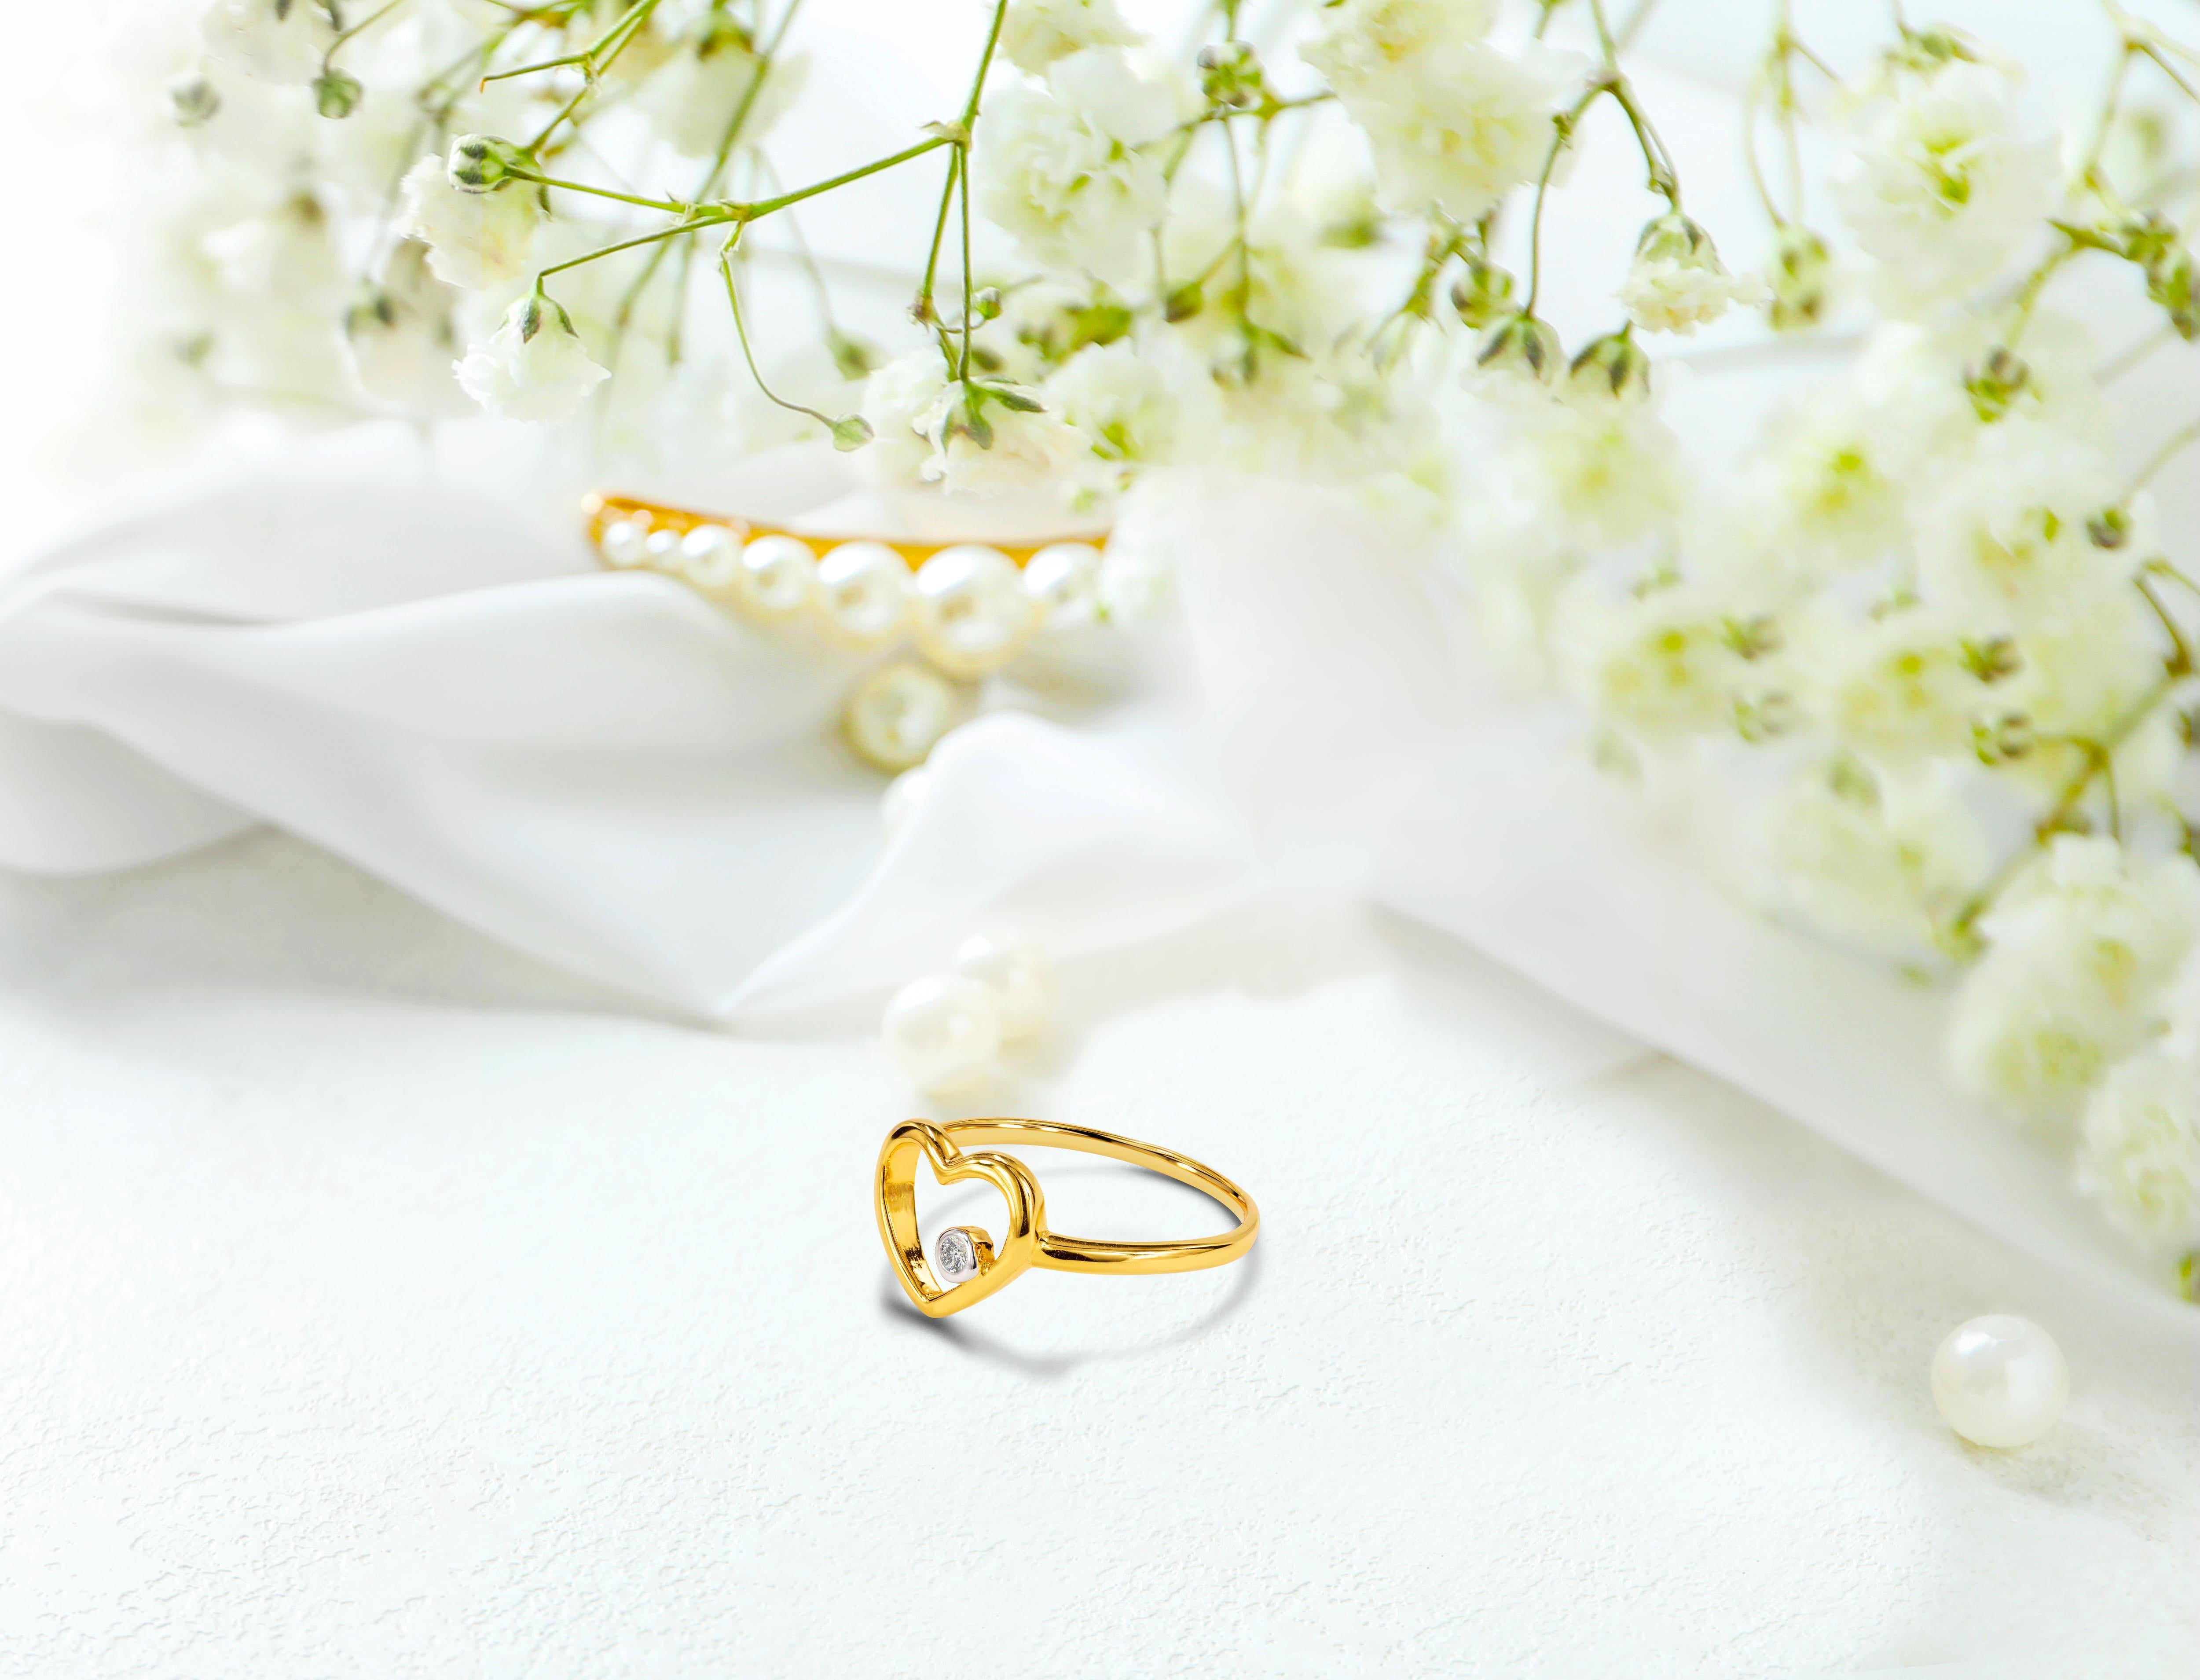 For Sale:  18k Rose Gold Diamond Heart Ring Minimal Heart Ring with Bezel Set Diamond 18